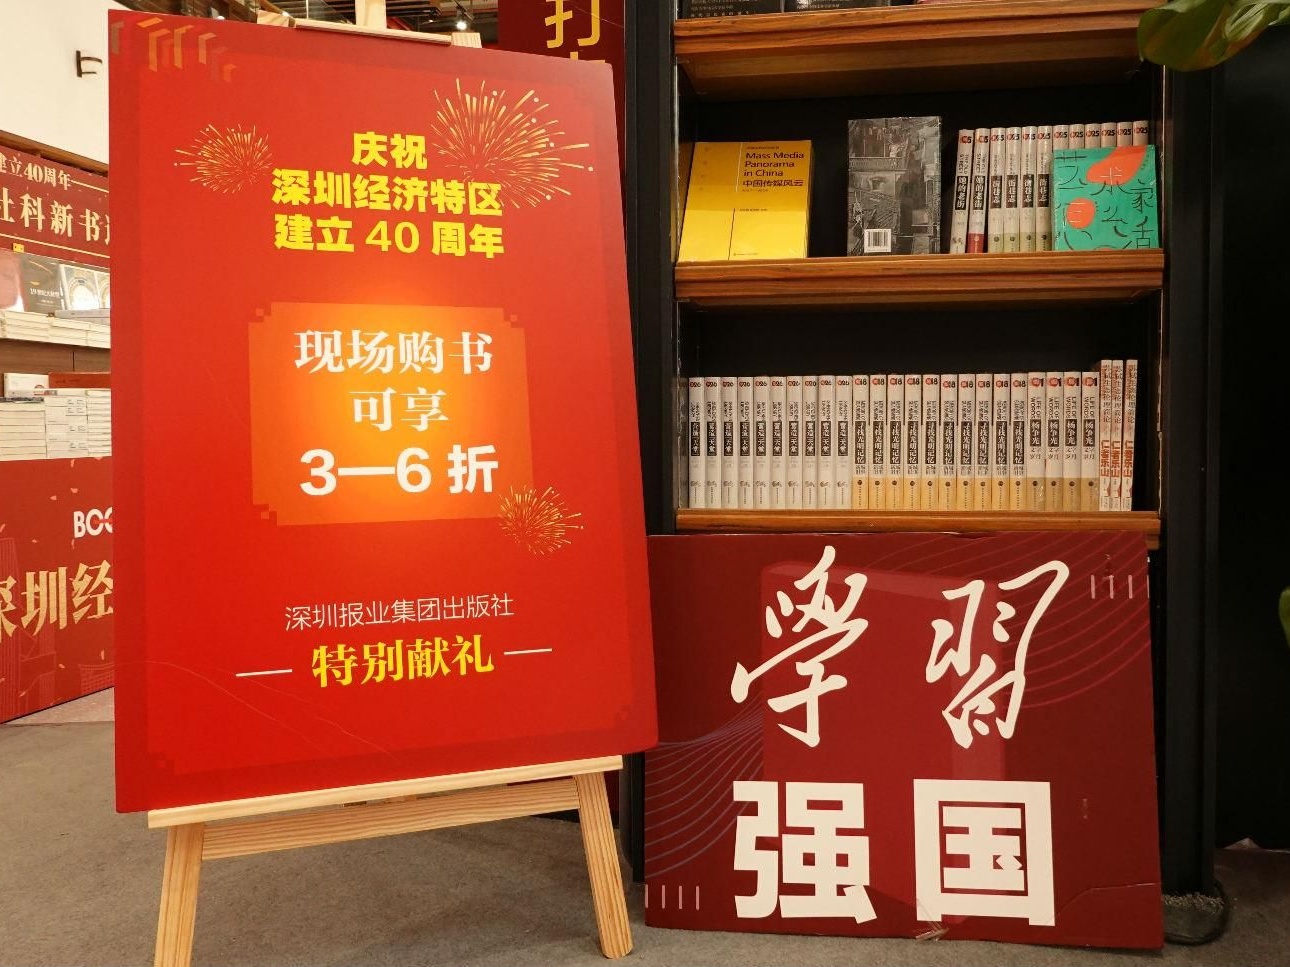 再现40年奋斗历程，庆祝深圳经济特区建立40周年书展反响火热